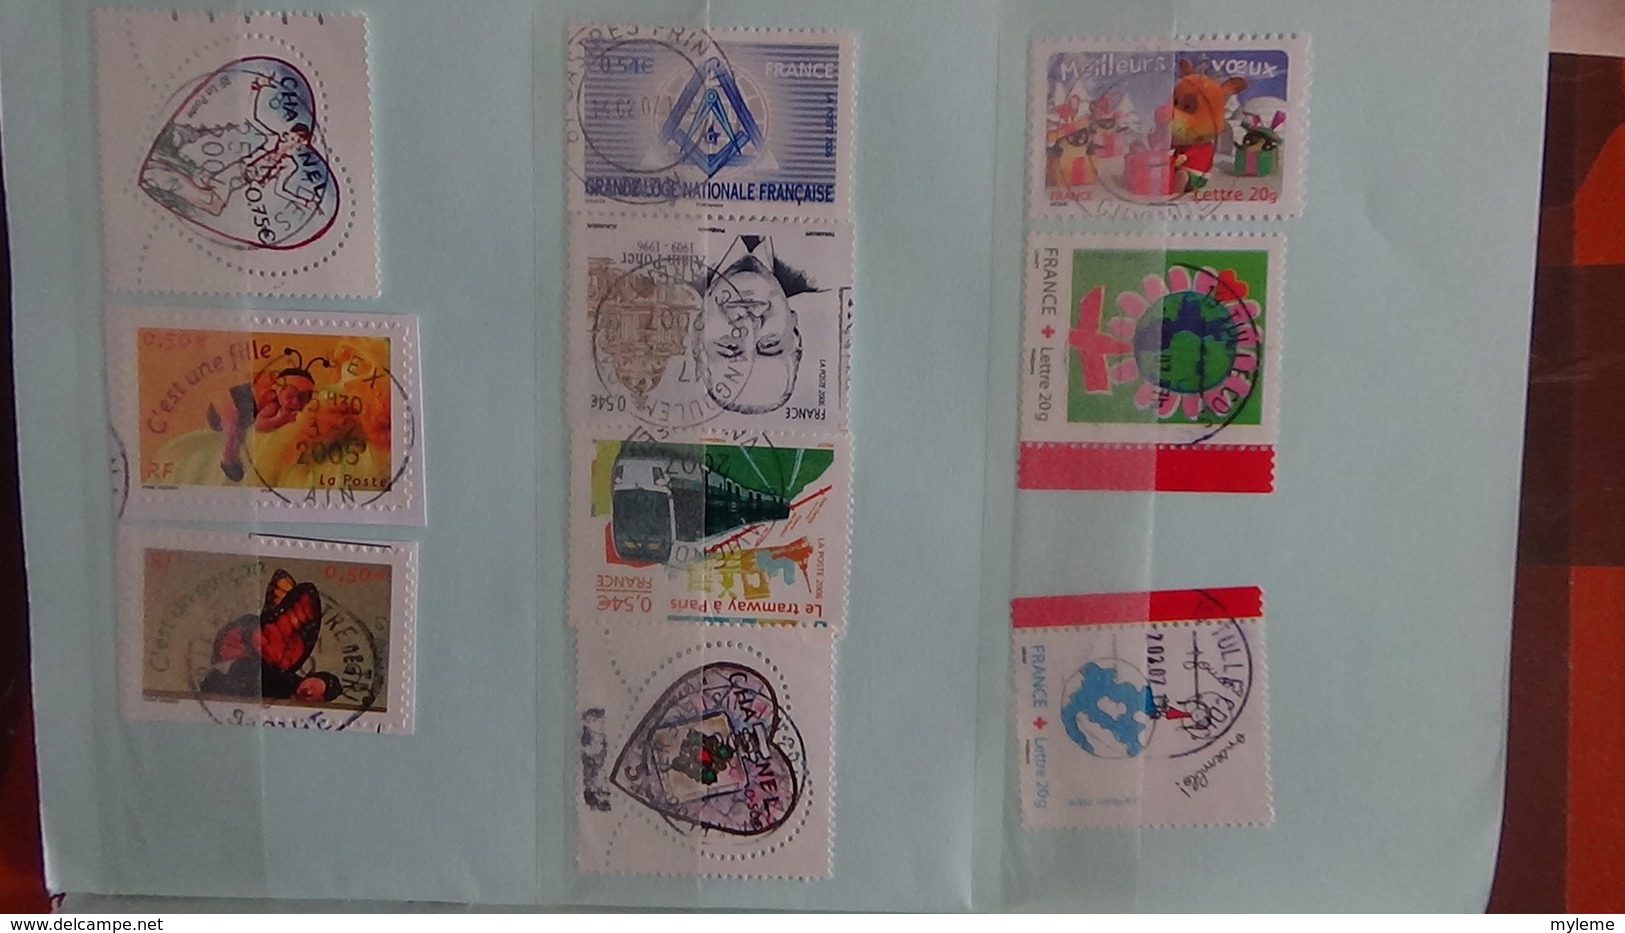 B365 Bon lot de timbres de France avec oblitérations rondes. Très sympa !!!